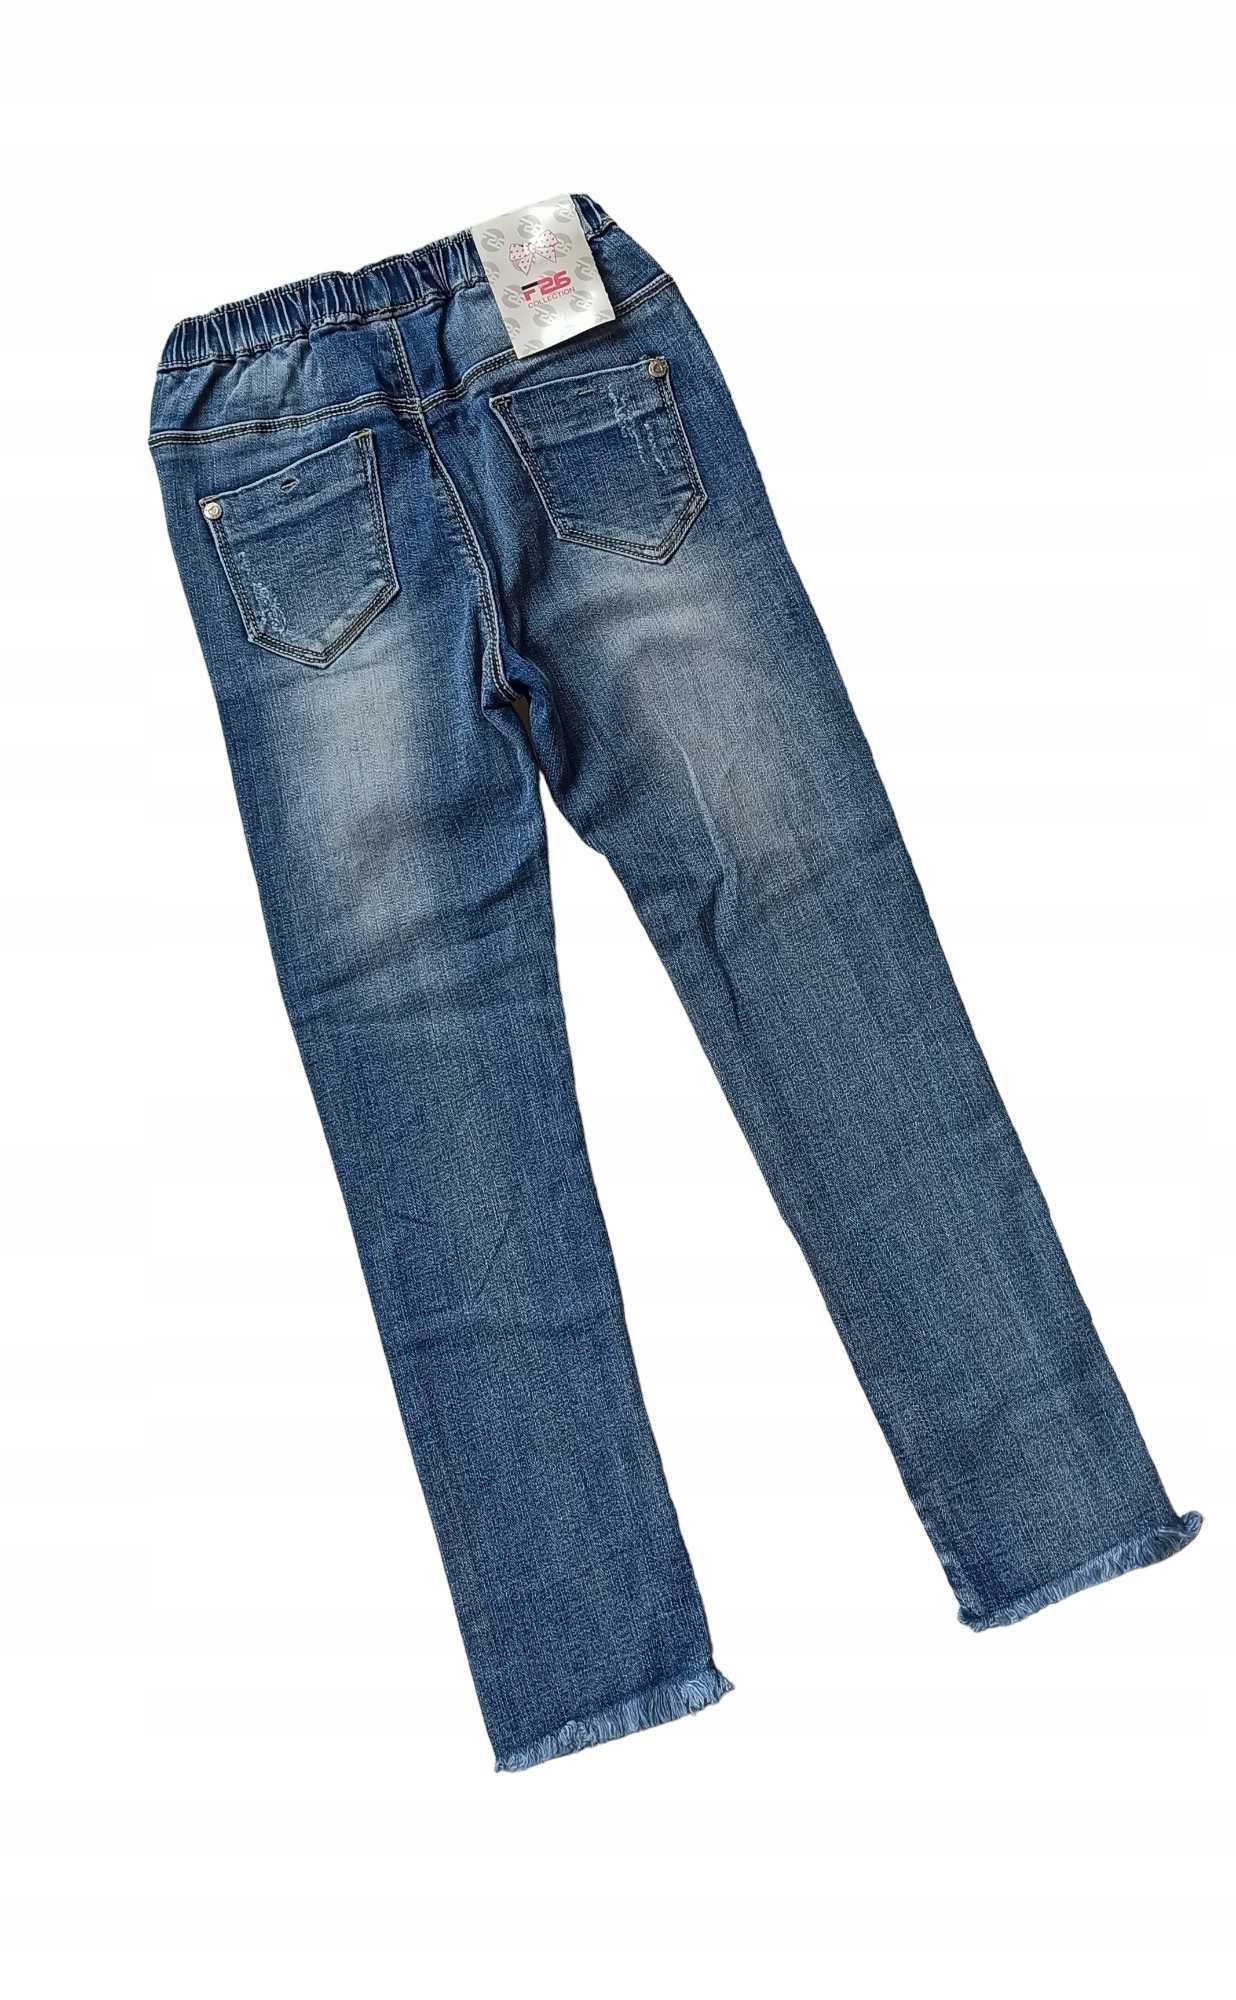 Spodnie jeans dla dziewczynki na gumce nowy 122-128